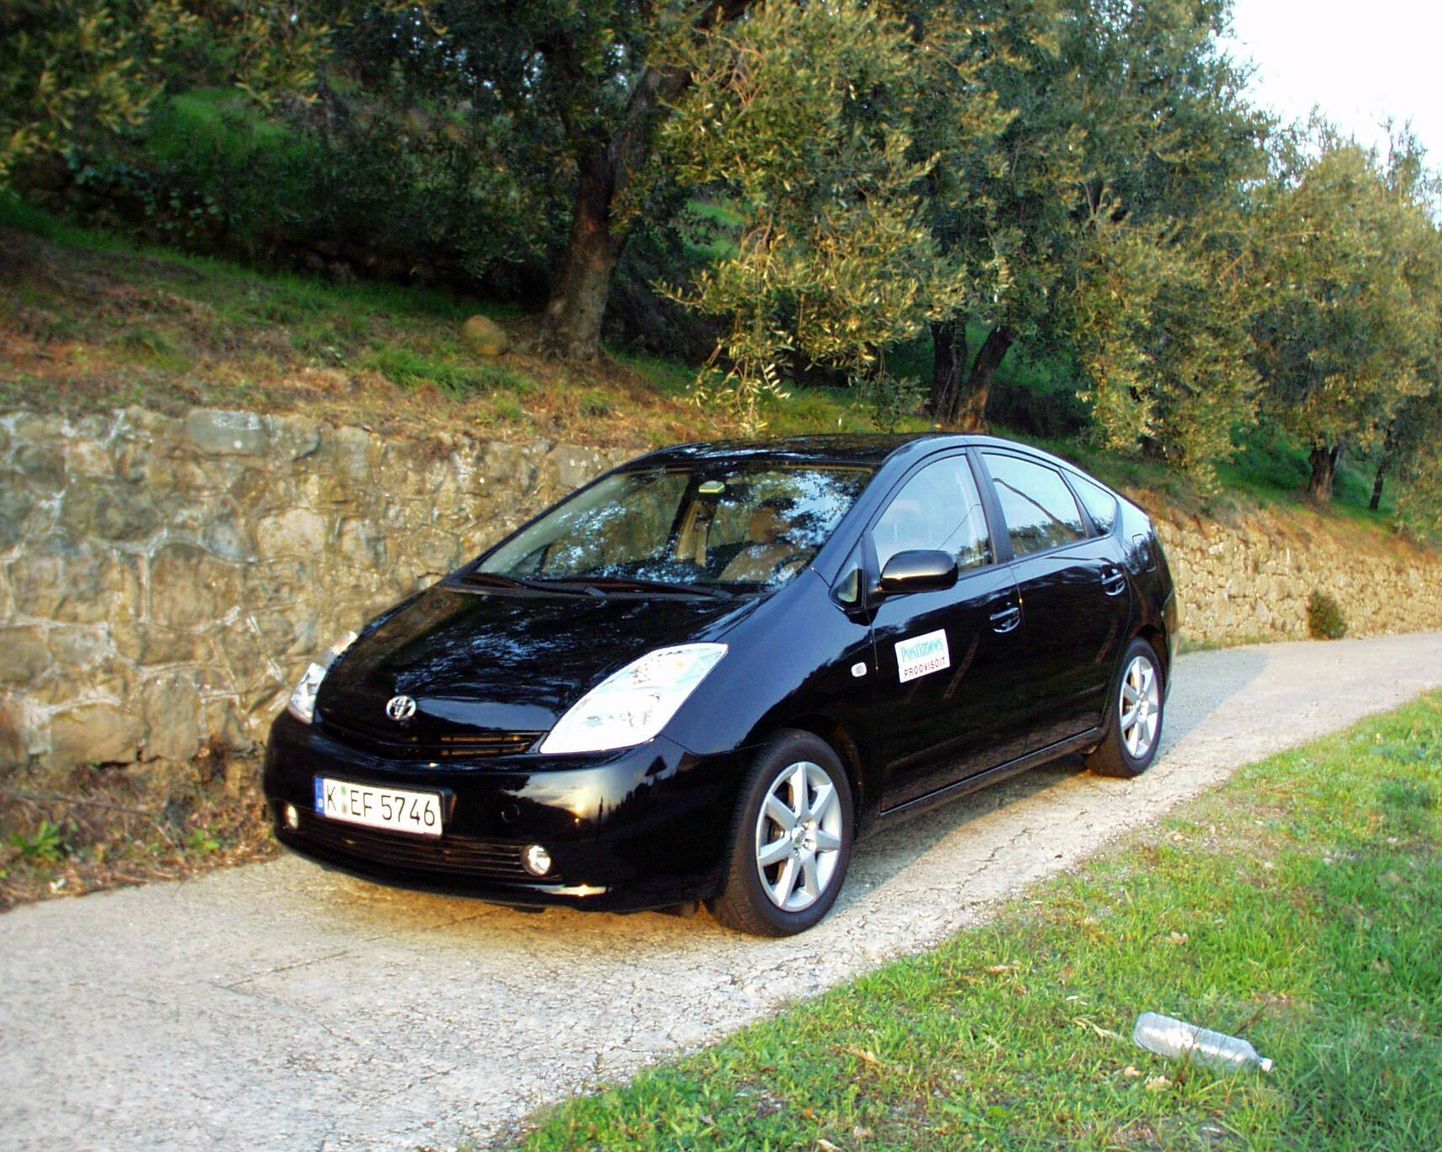 Toyotalt kandideerib 2010. aasta auto tiitlile viis mudelit, nende seas ka Prius.